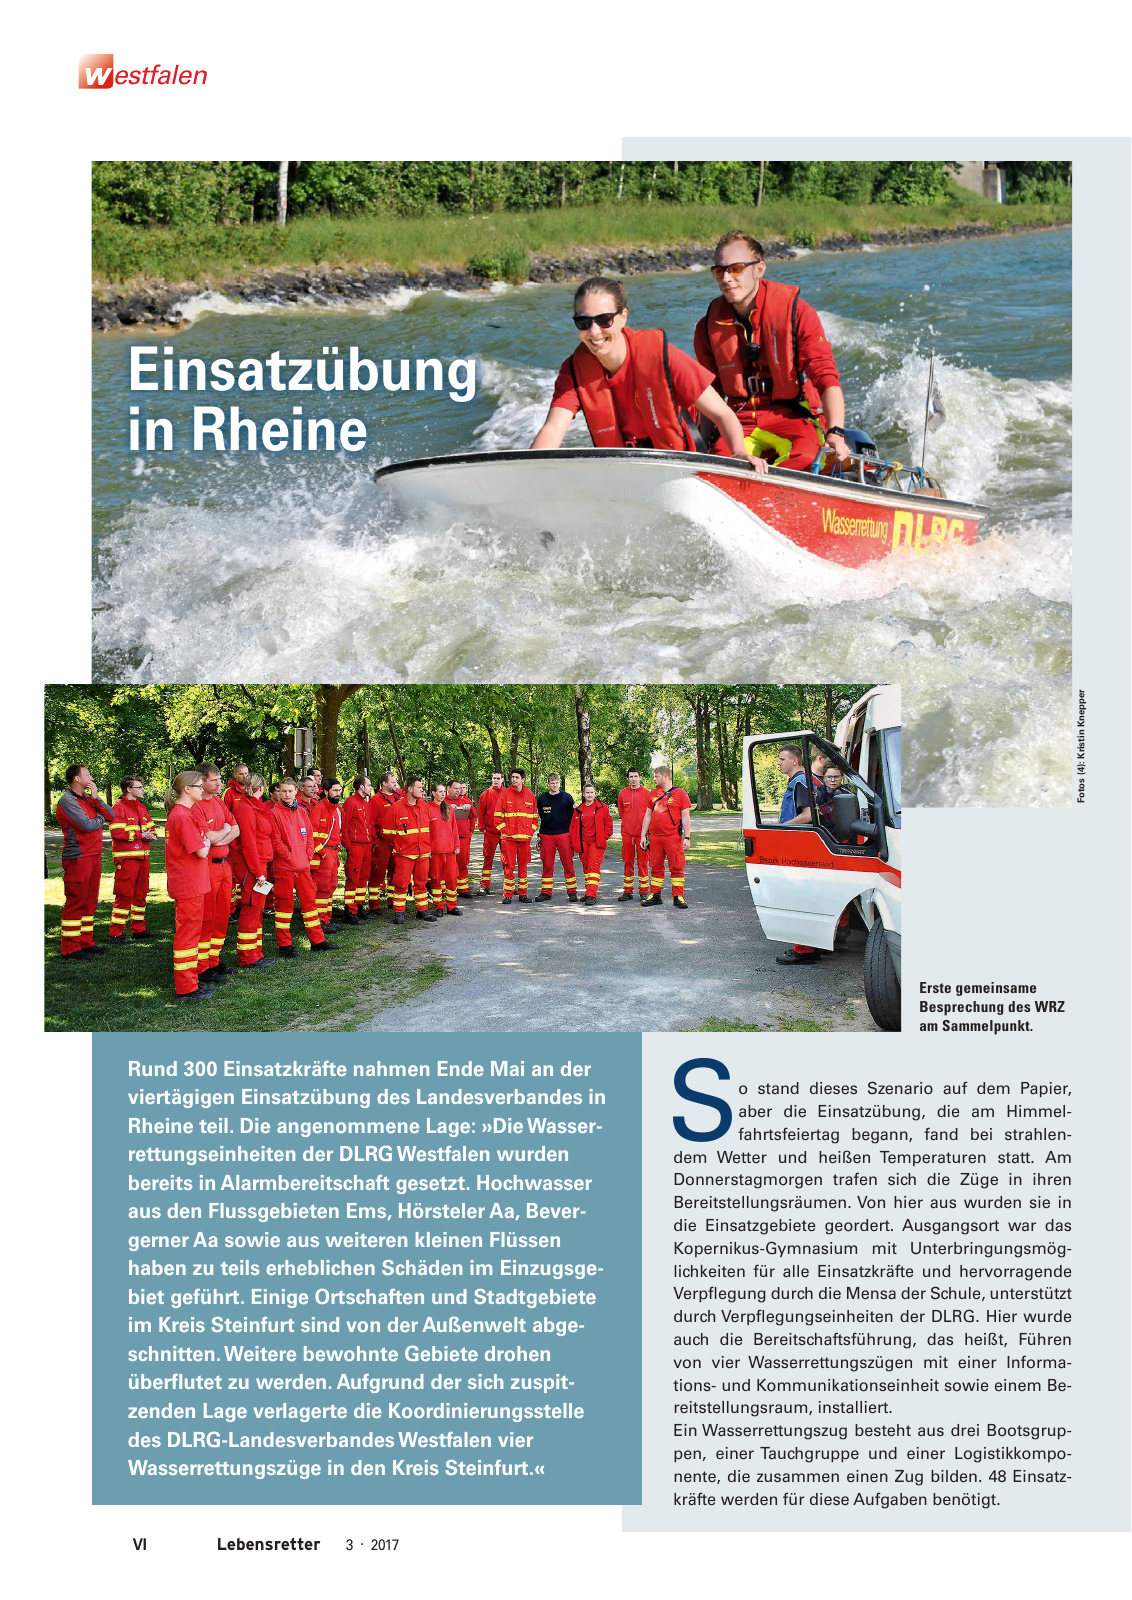 Vorschau Lebensretter 3/2017 - Regionalausgabe Westfalen Seite 8